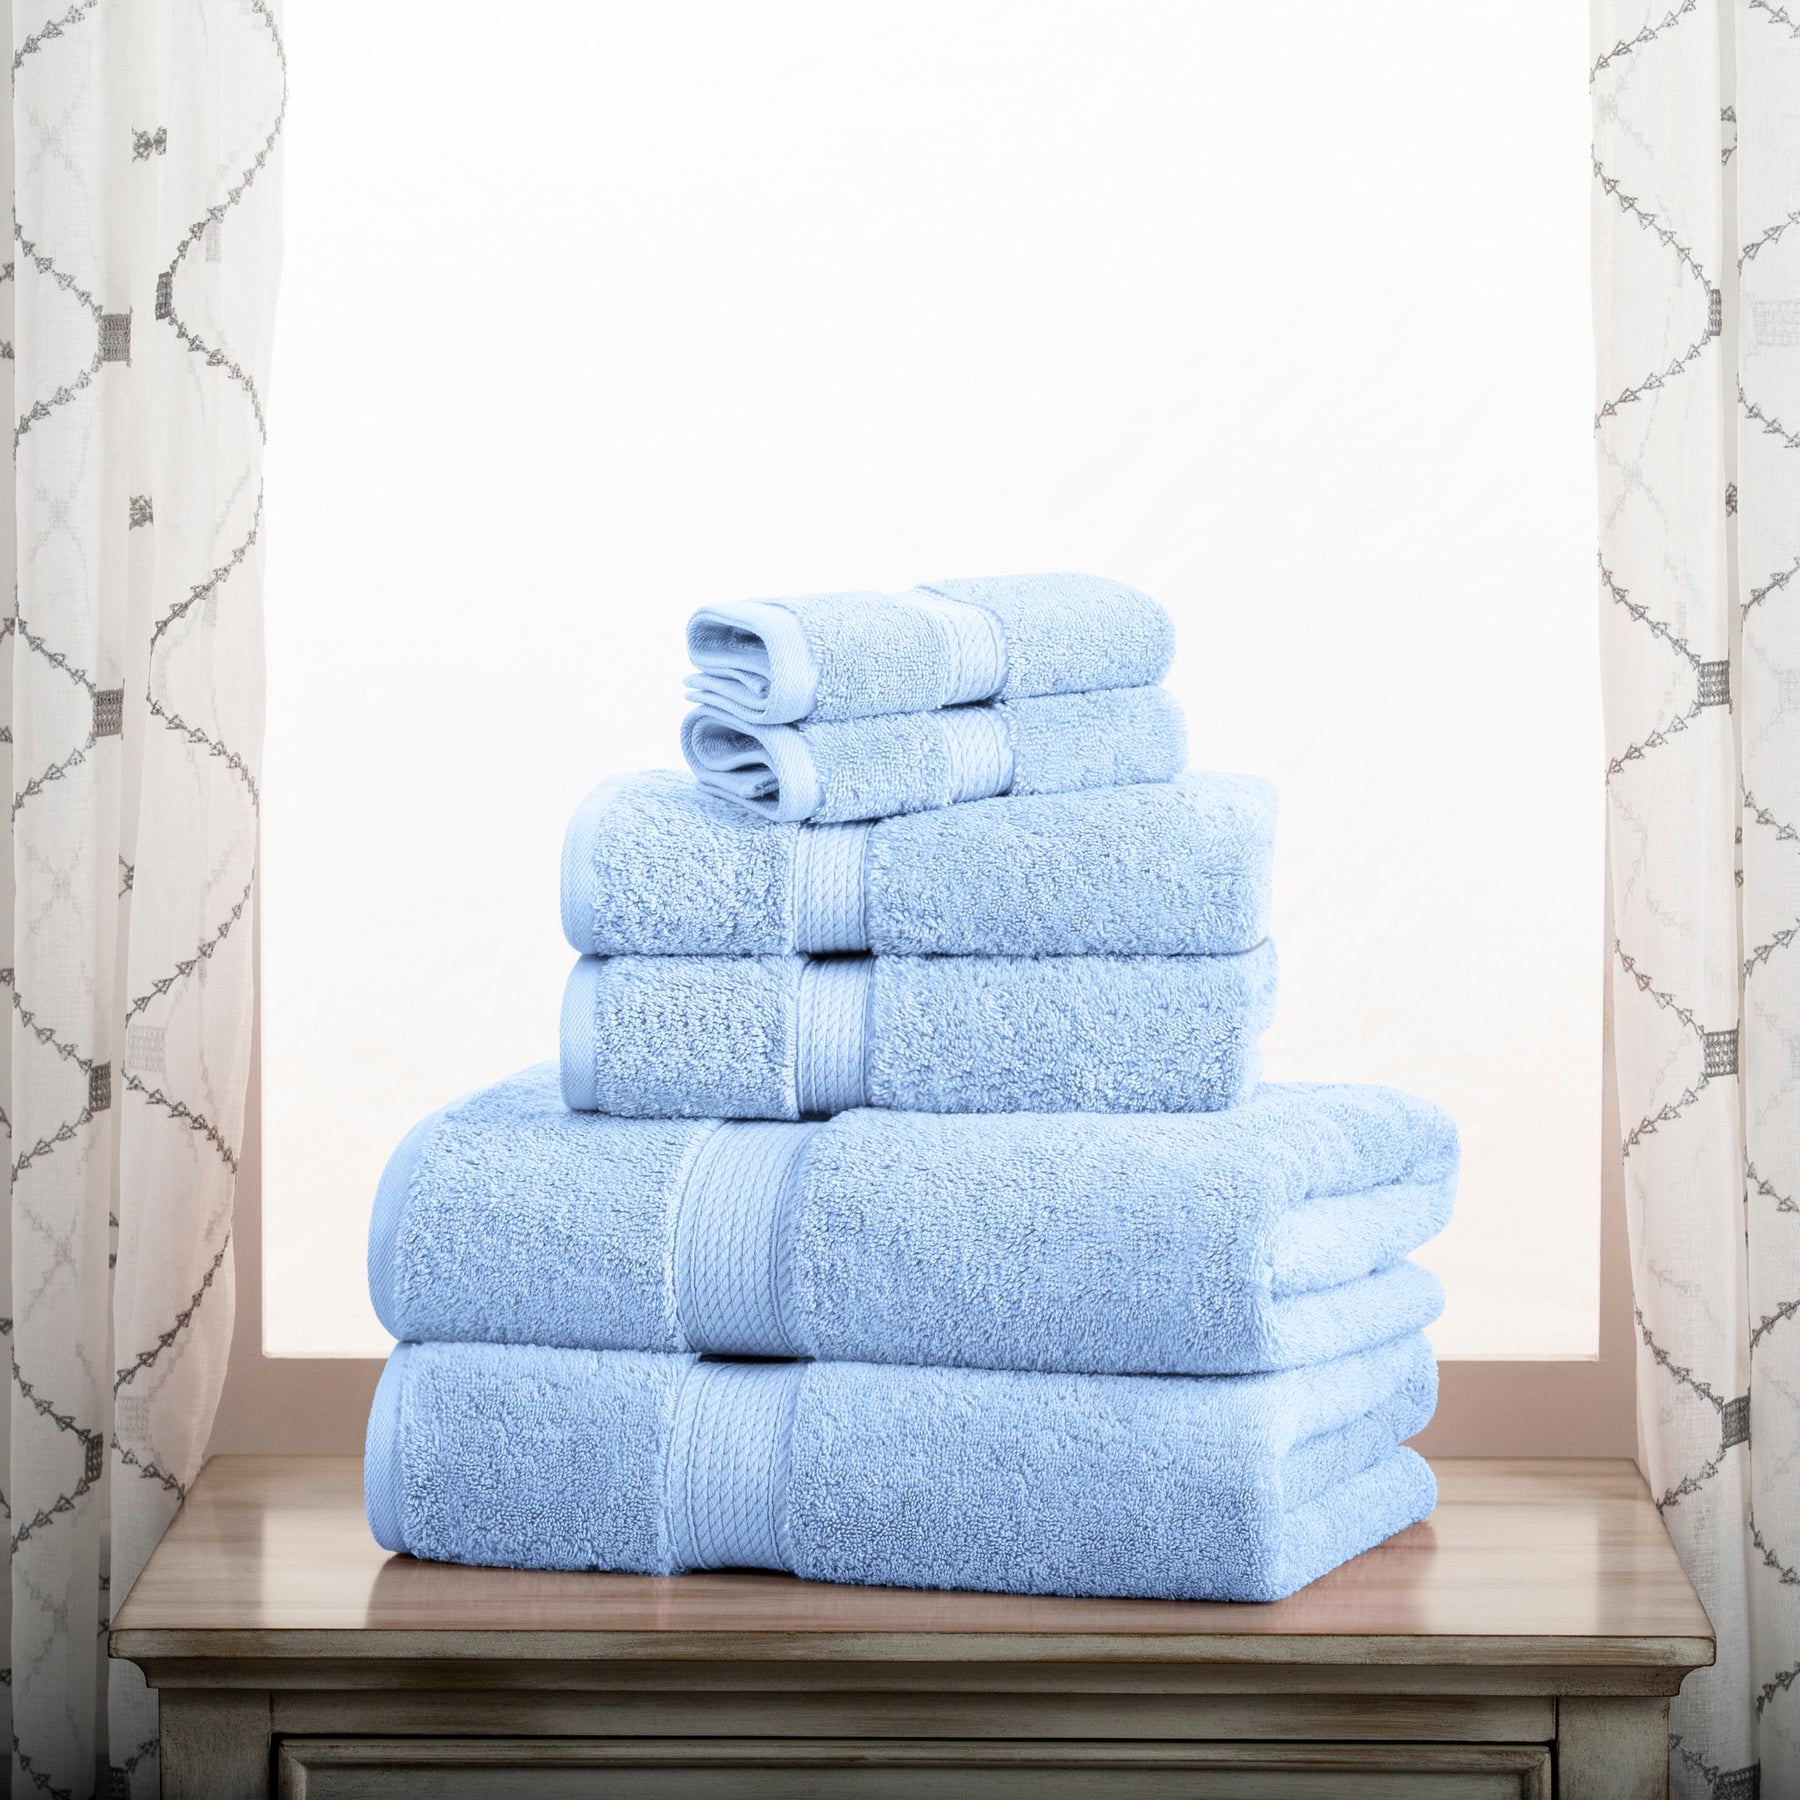 8pc Cotton Bath Towel Set Light Blue